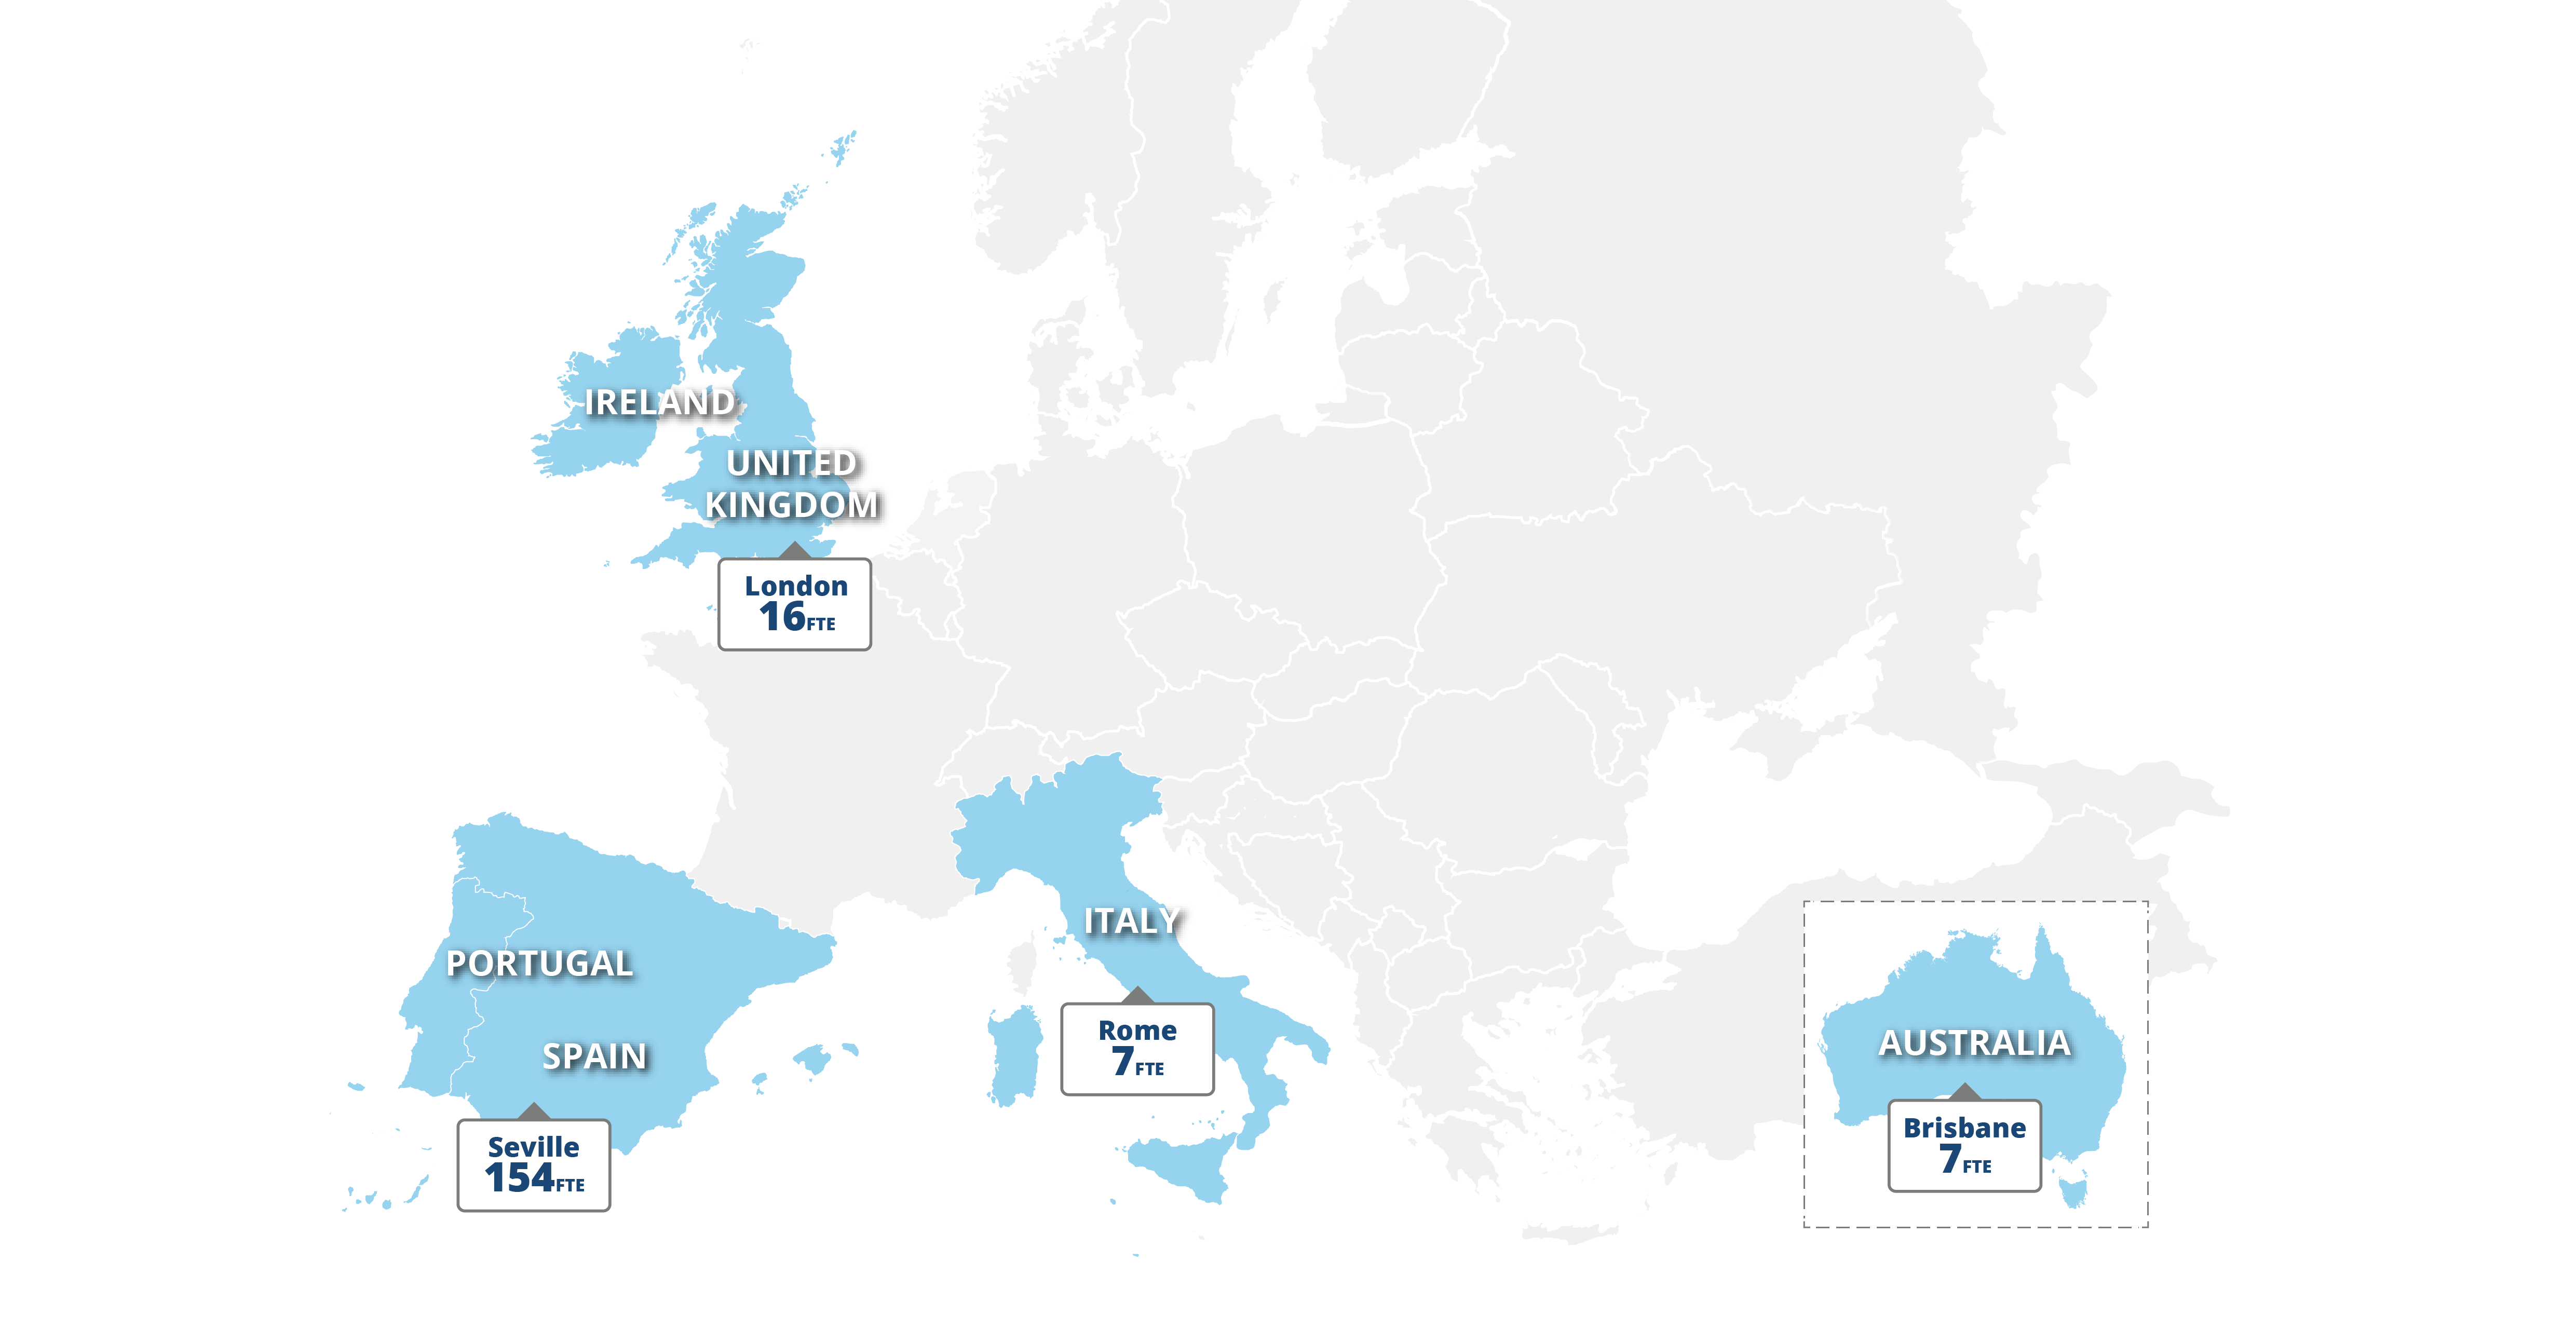 Europe Map AUS Landing